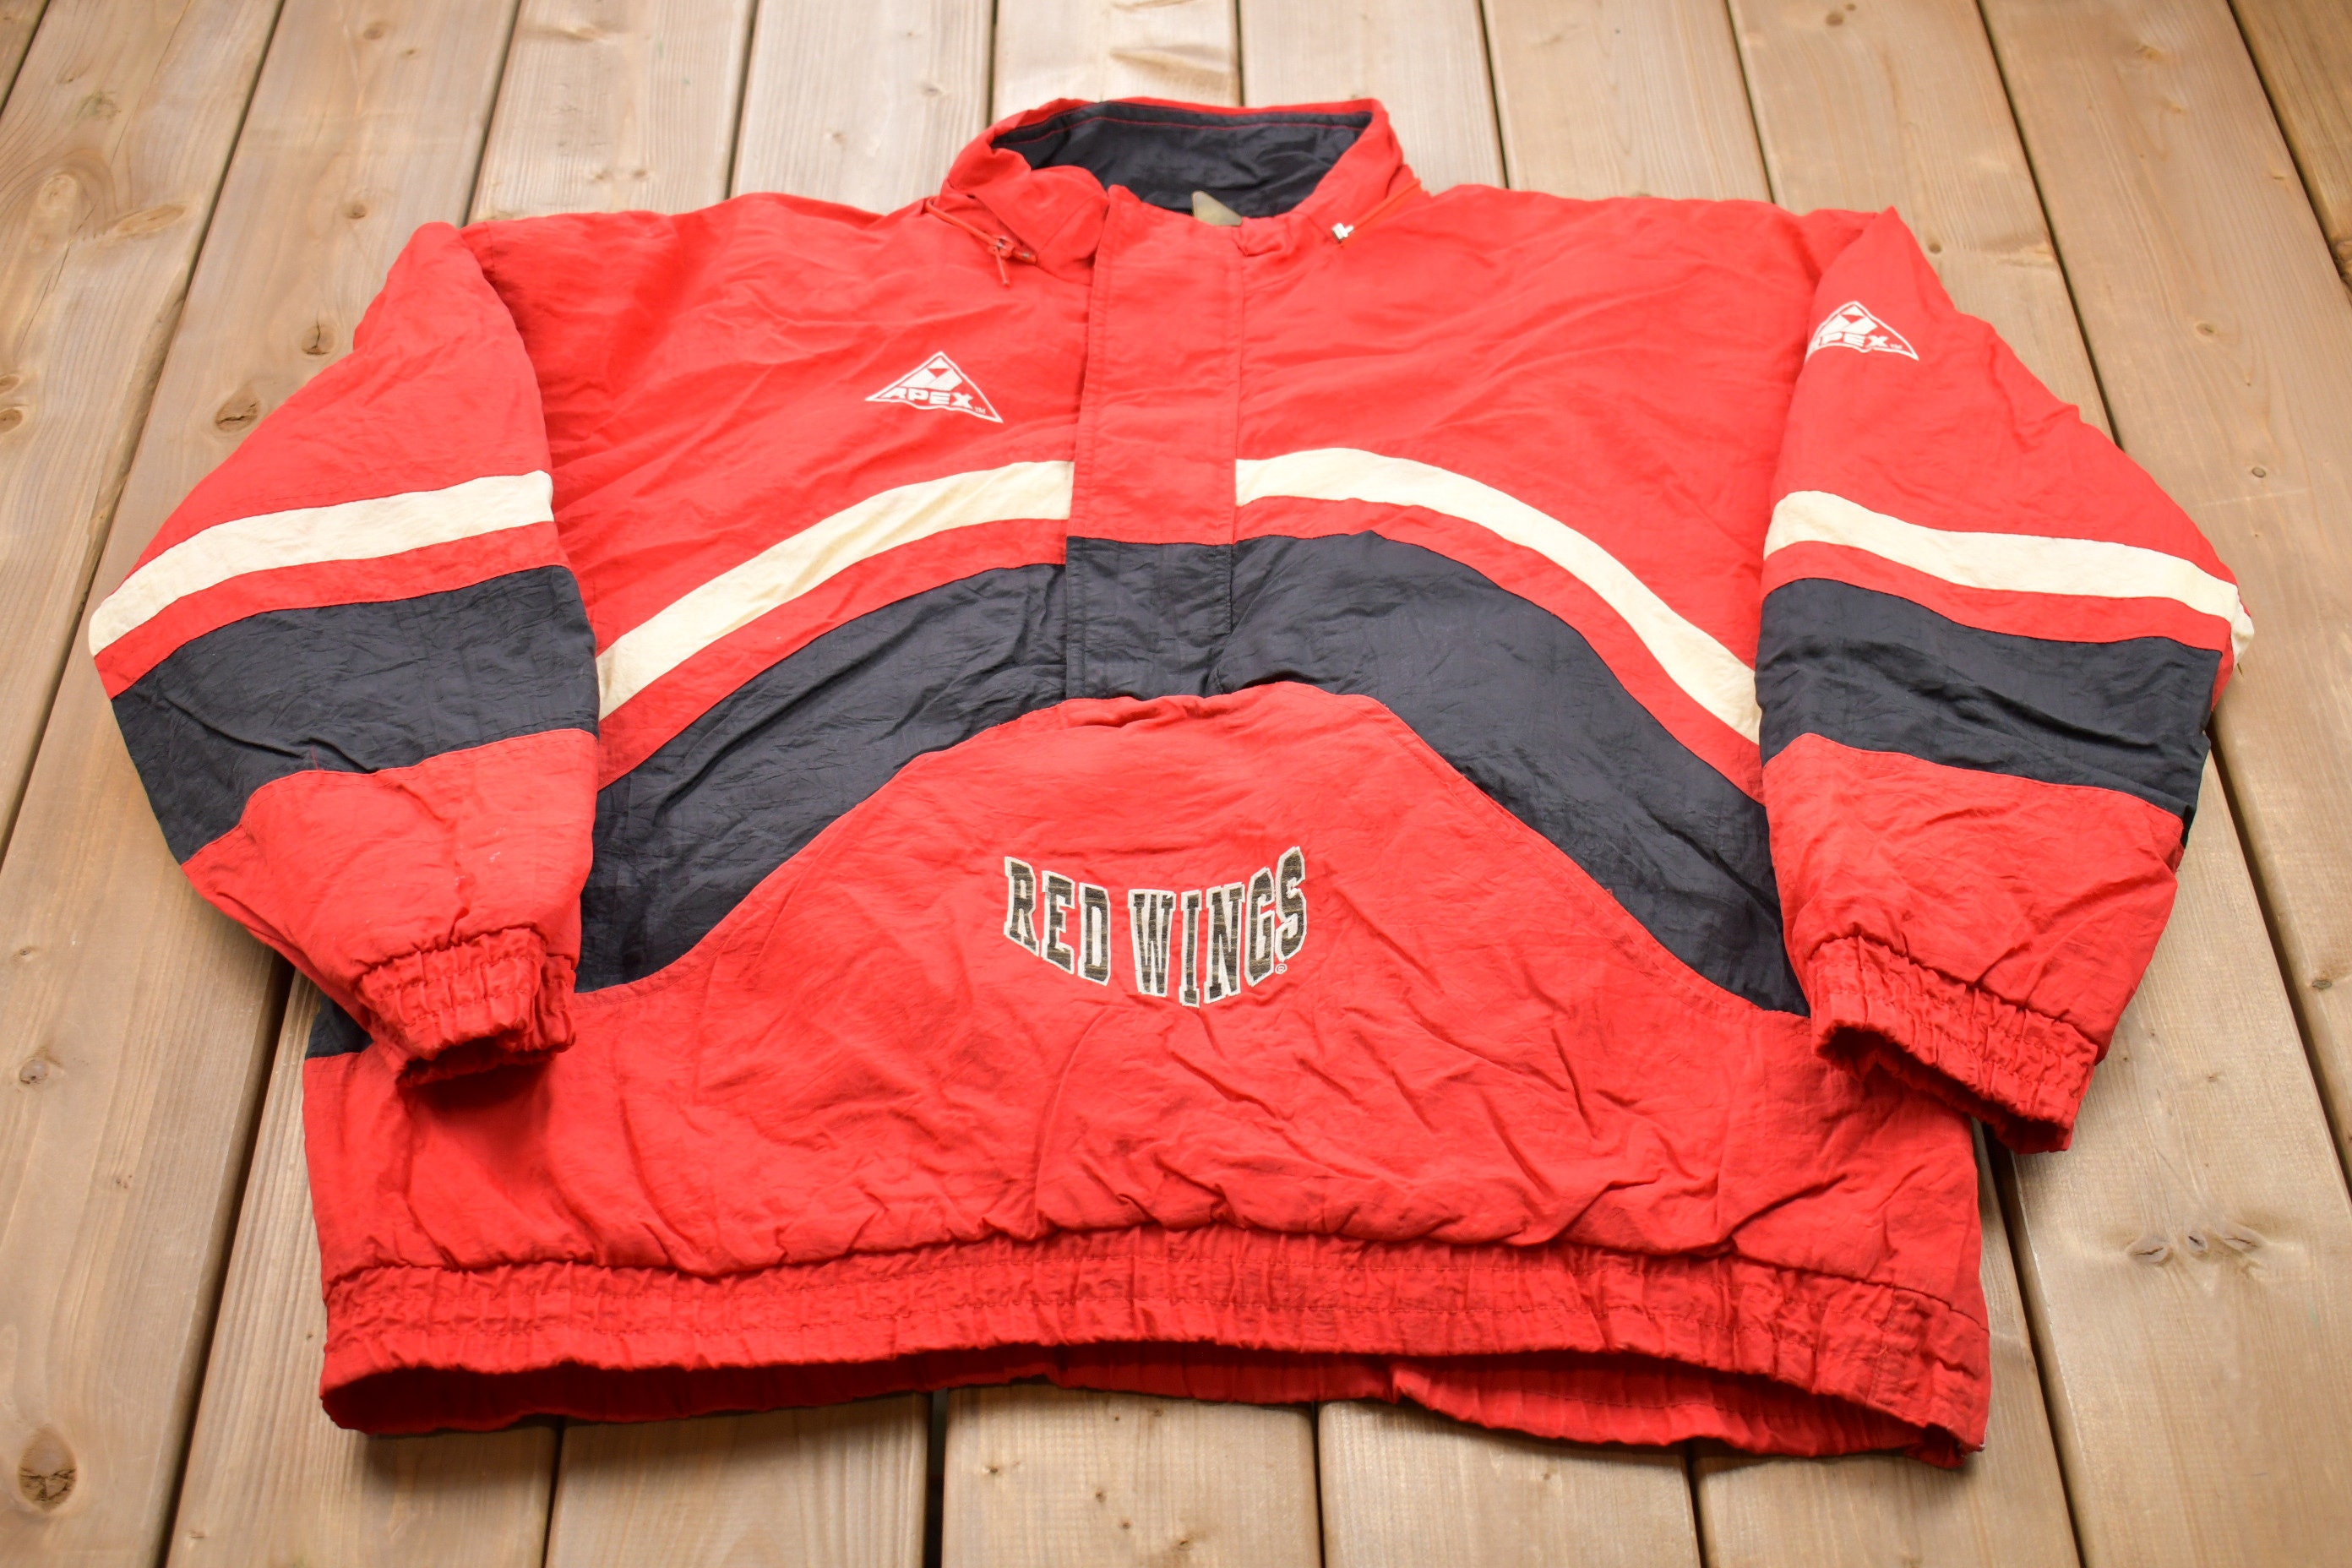 Detroit Red Wings Men's Stripe Starter Jacket